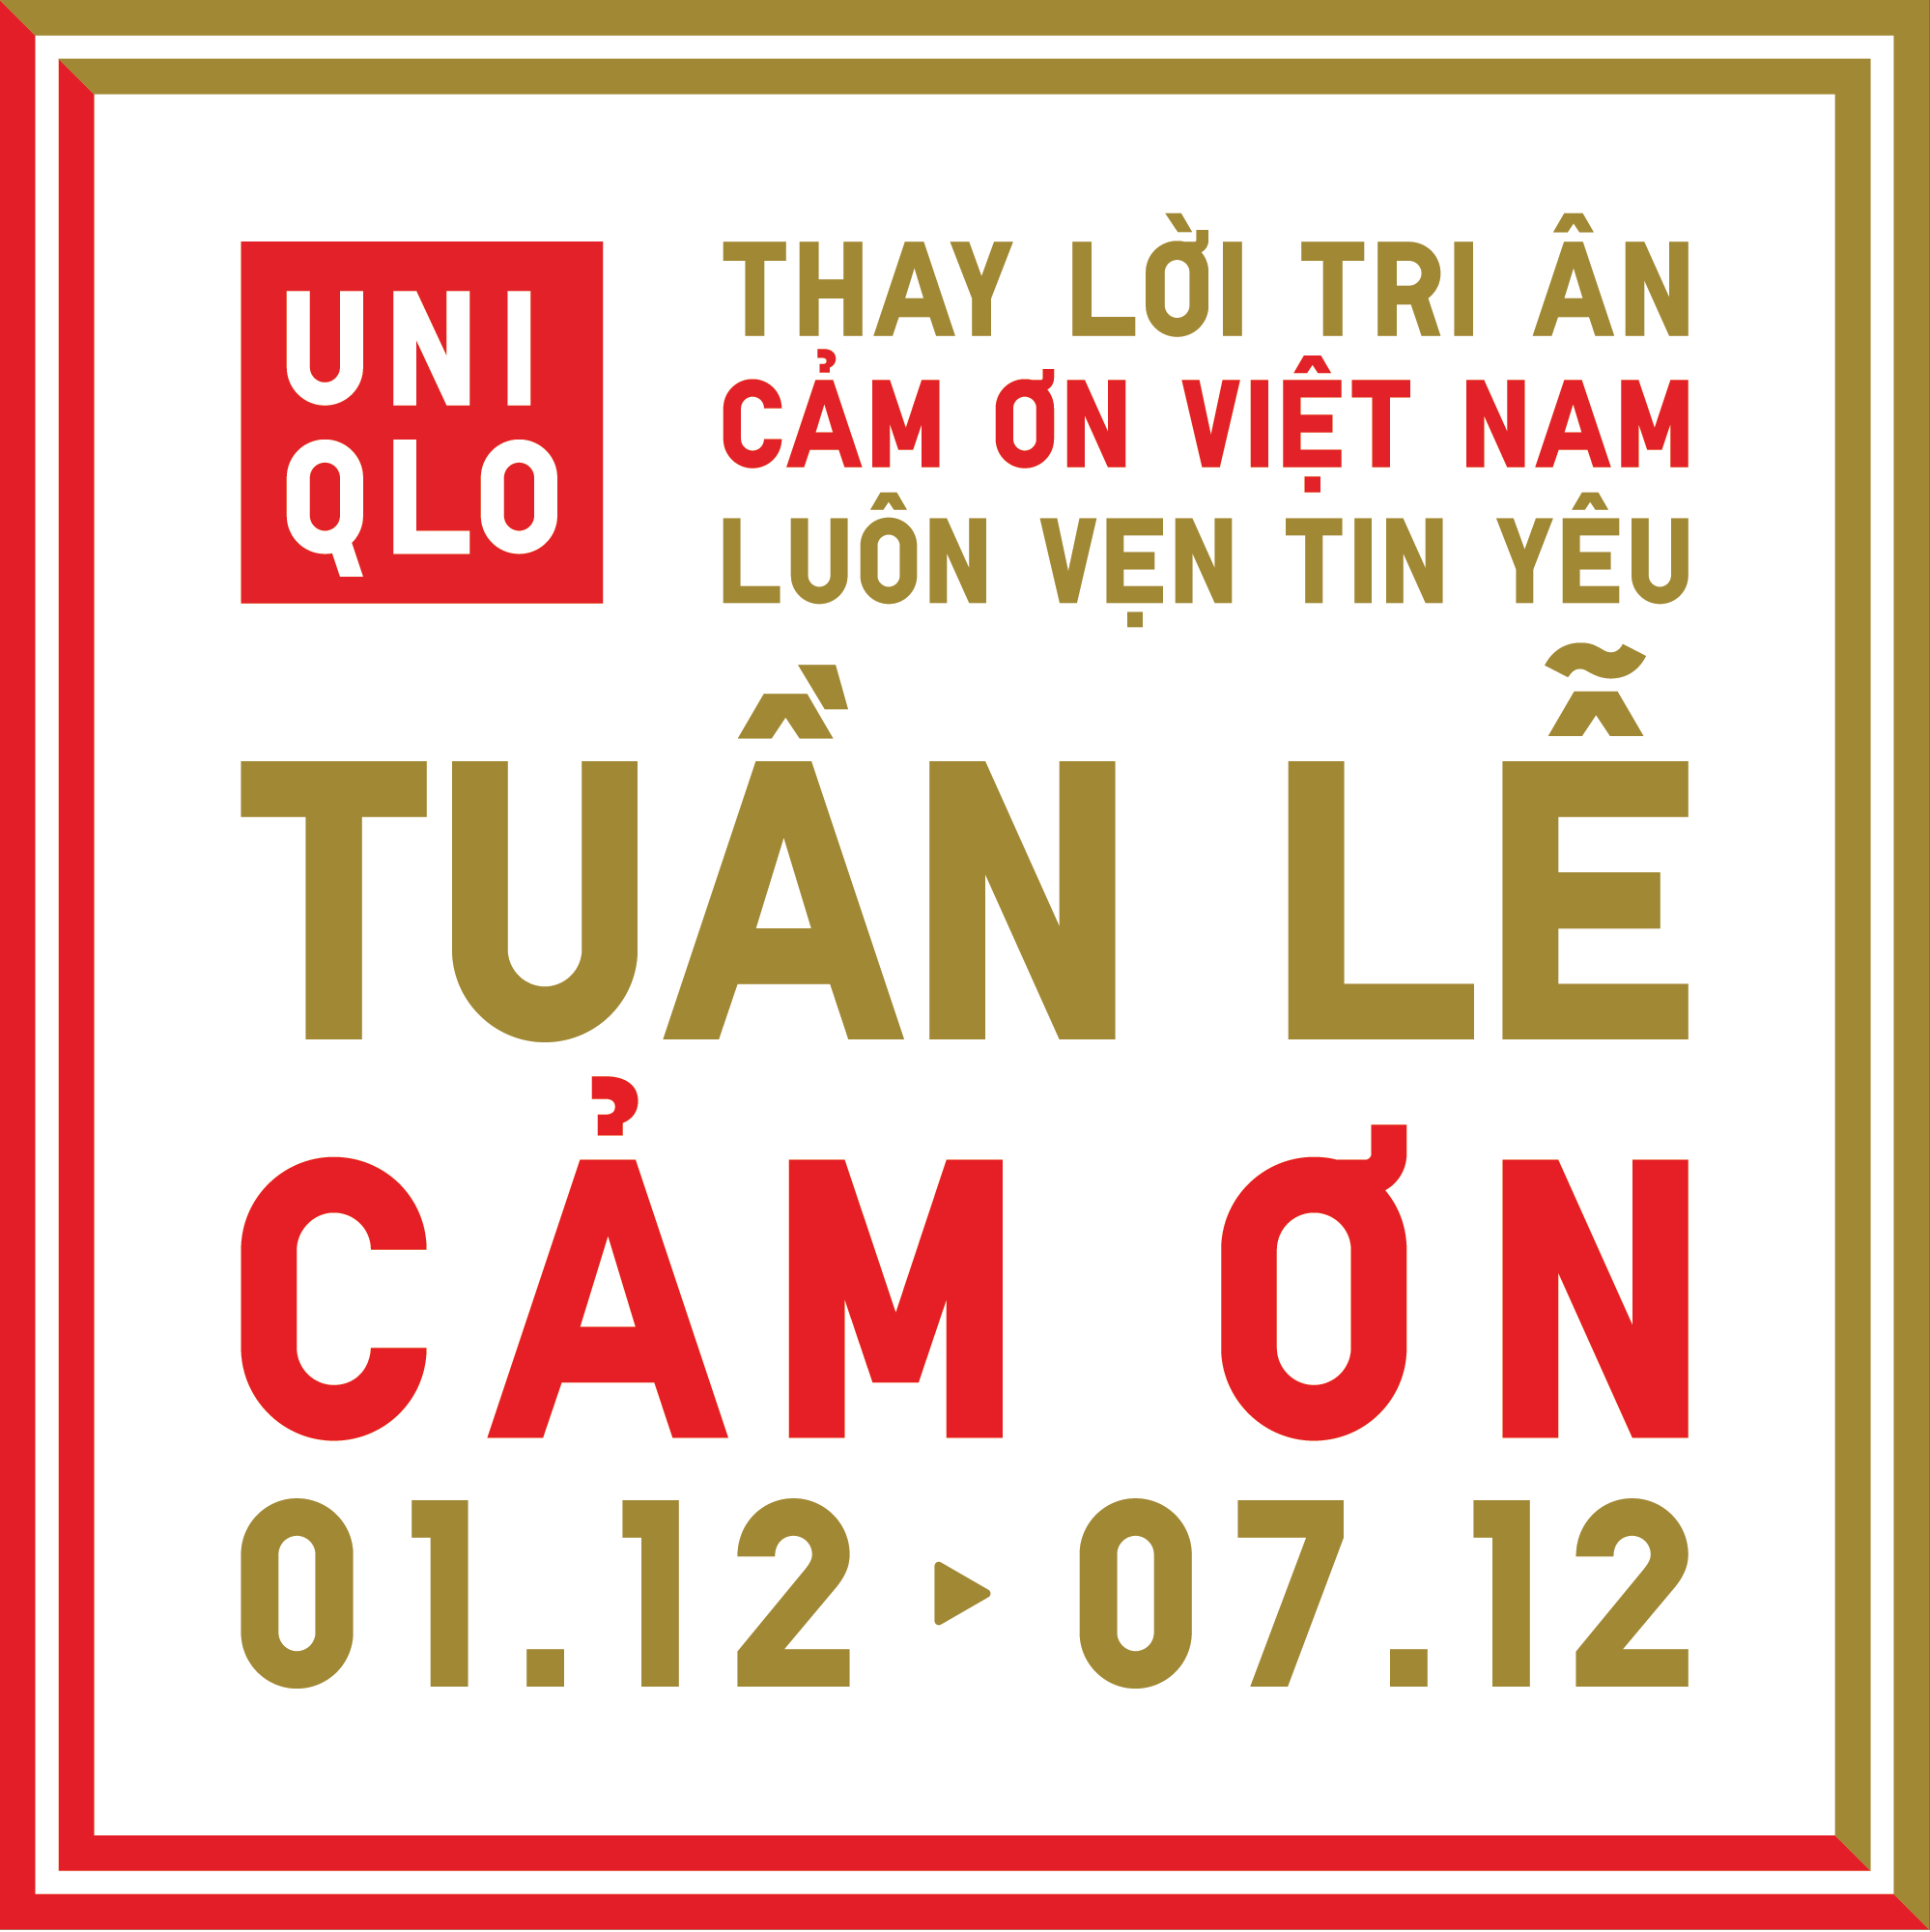 1-uniqlo-khoi-dong-tuan-le-cam-on-tu-01-07-thang-12-ky-niem-hanh-trinh-4-nam-tron-ven-tin-yeu-tai-viet-nam-1700469607.png